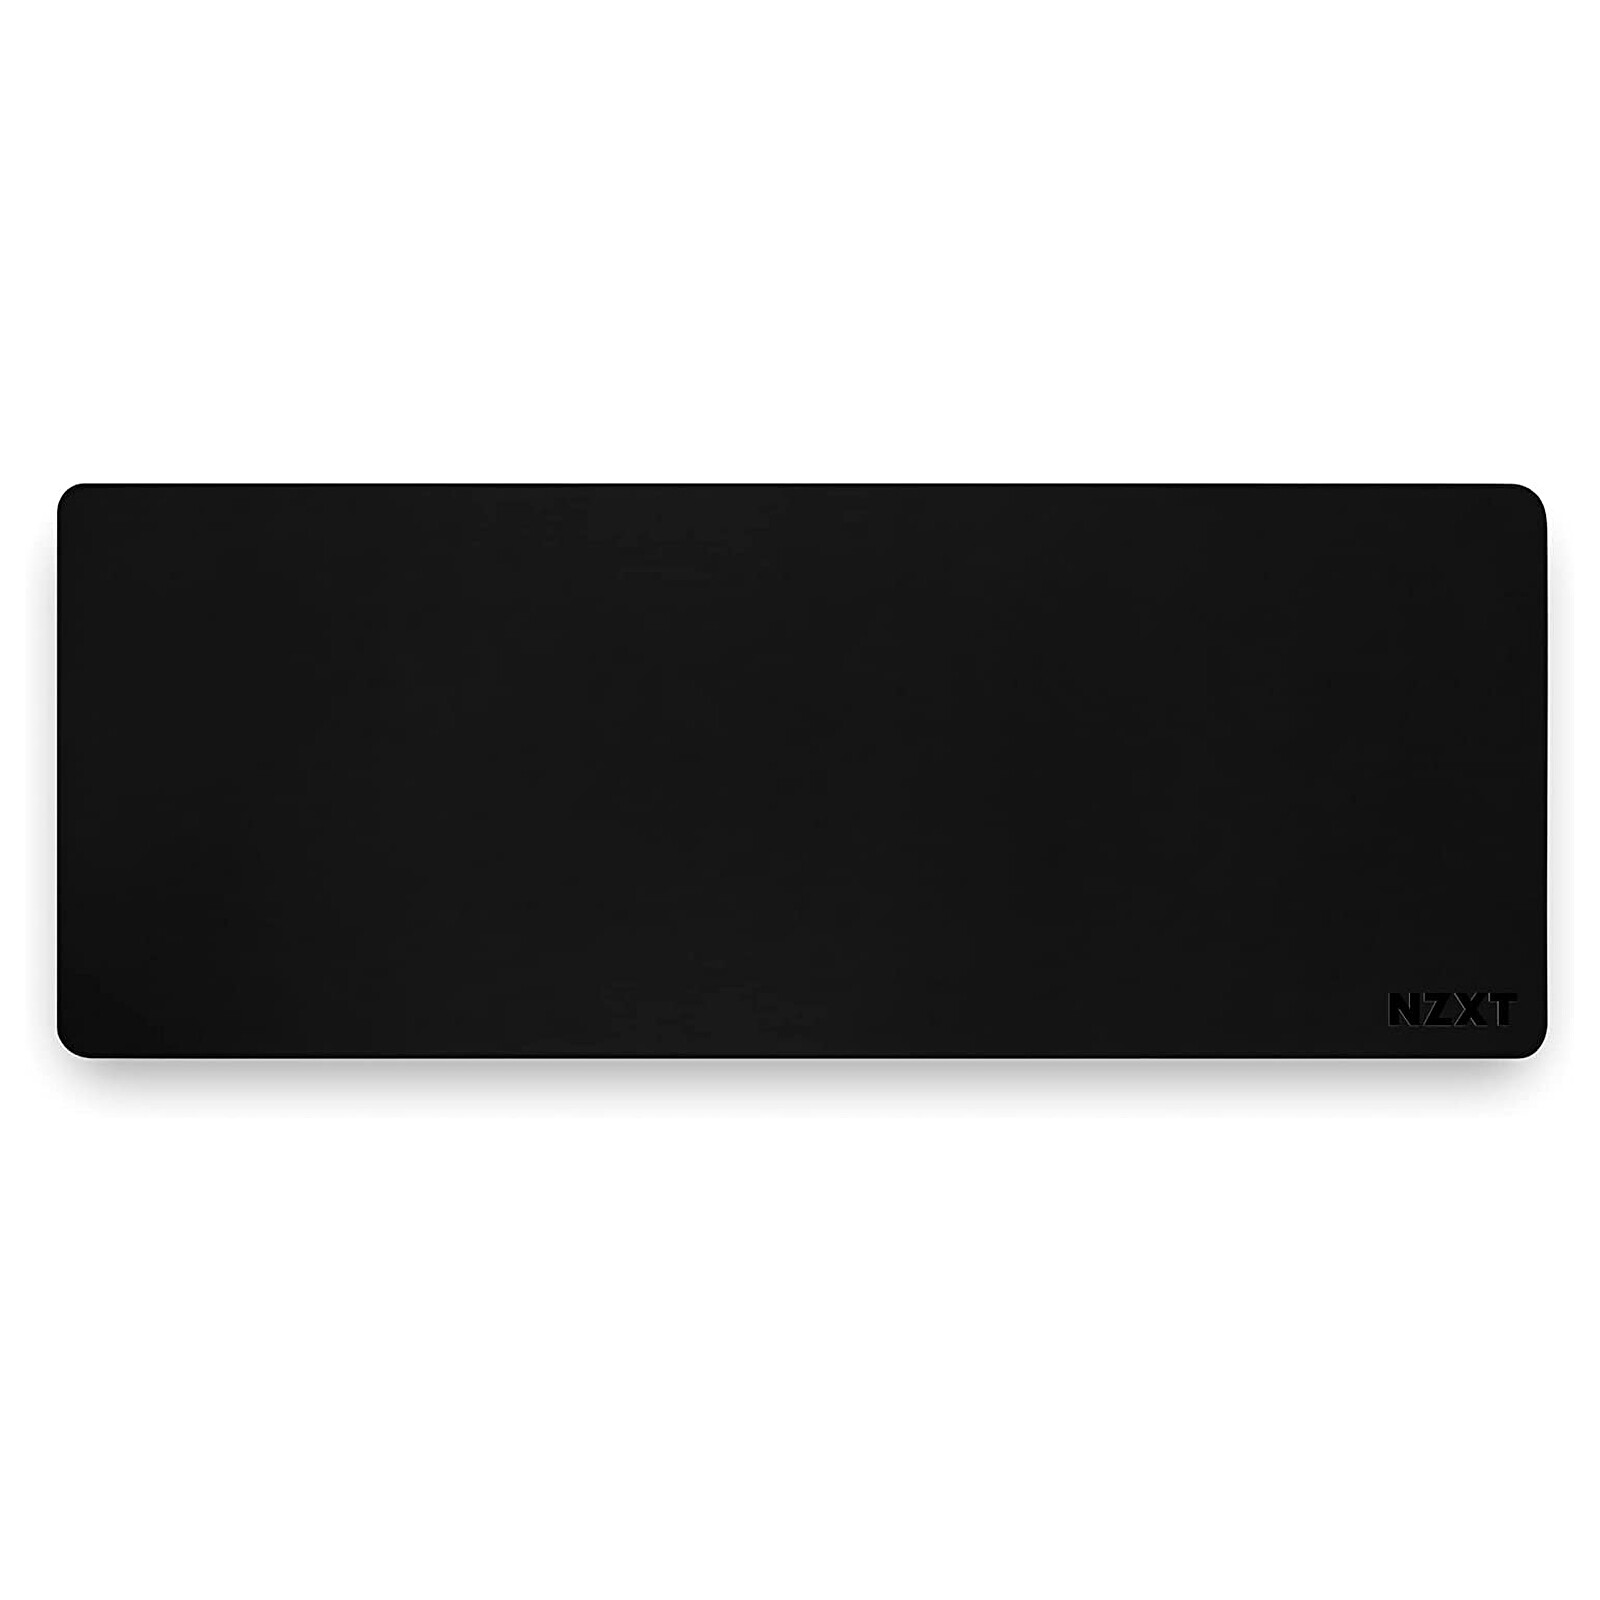 NZXT MXL900 (Noir) - Tapis de souris - Garantie 3 ans LDLC